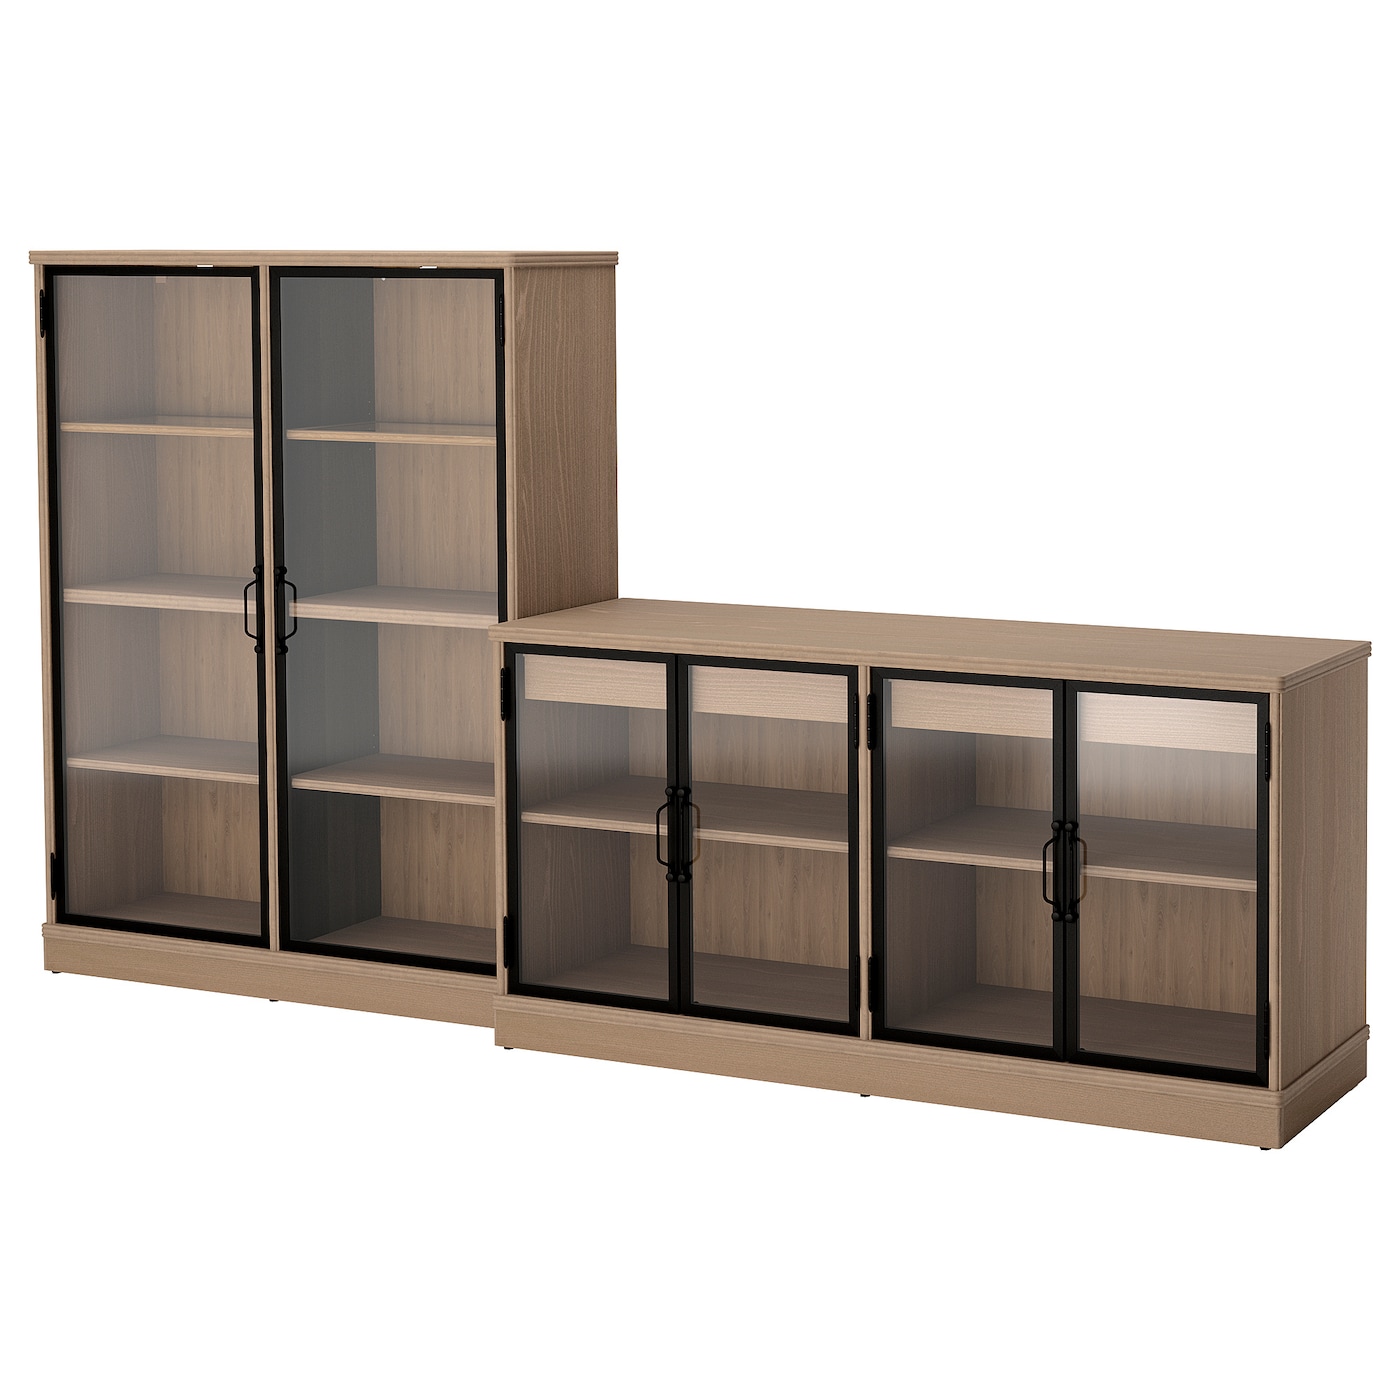 Шкаф для хранения  - LANESUND IKEA/ ЛАНЕСУНД ИКЕА, 282x47x152 см, коричневый/прозрачный